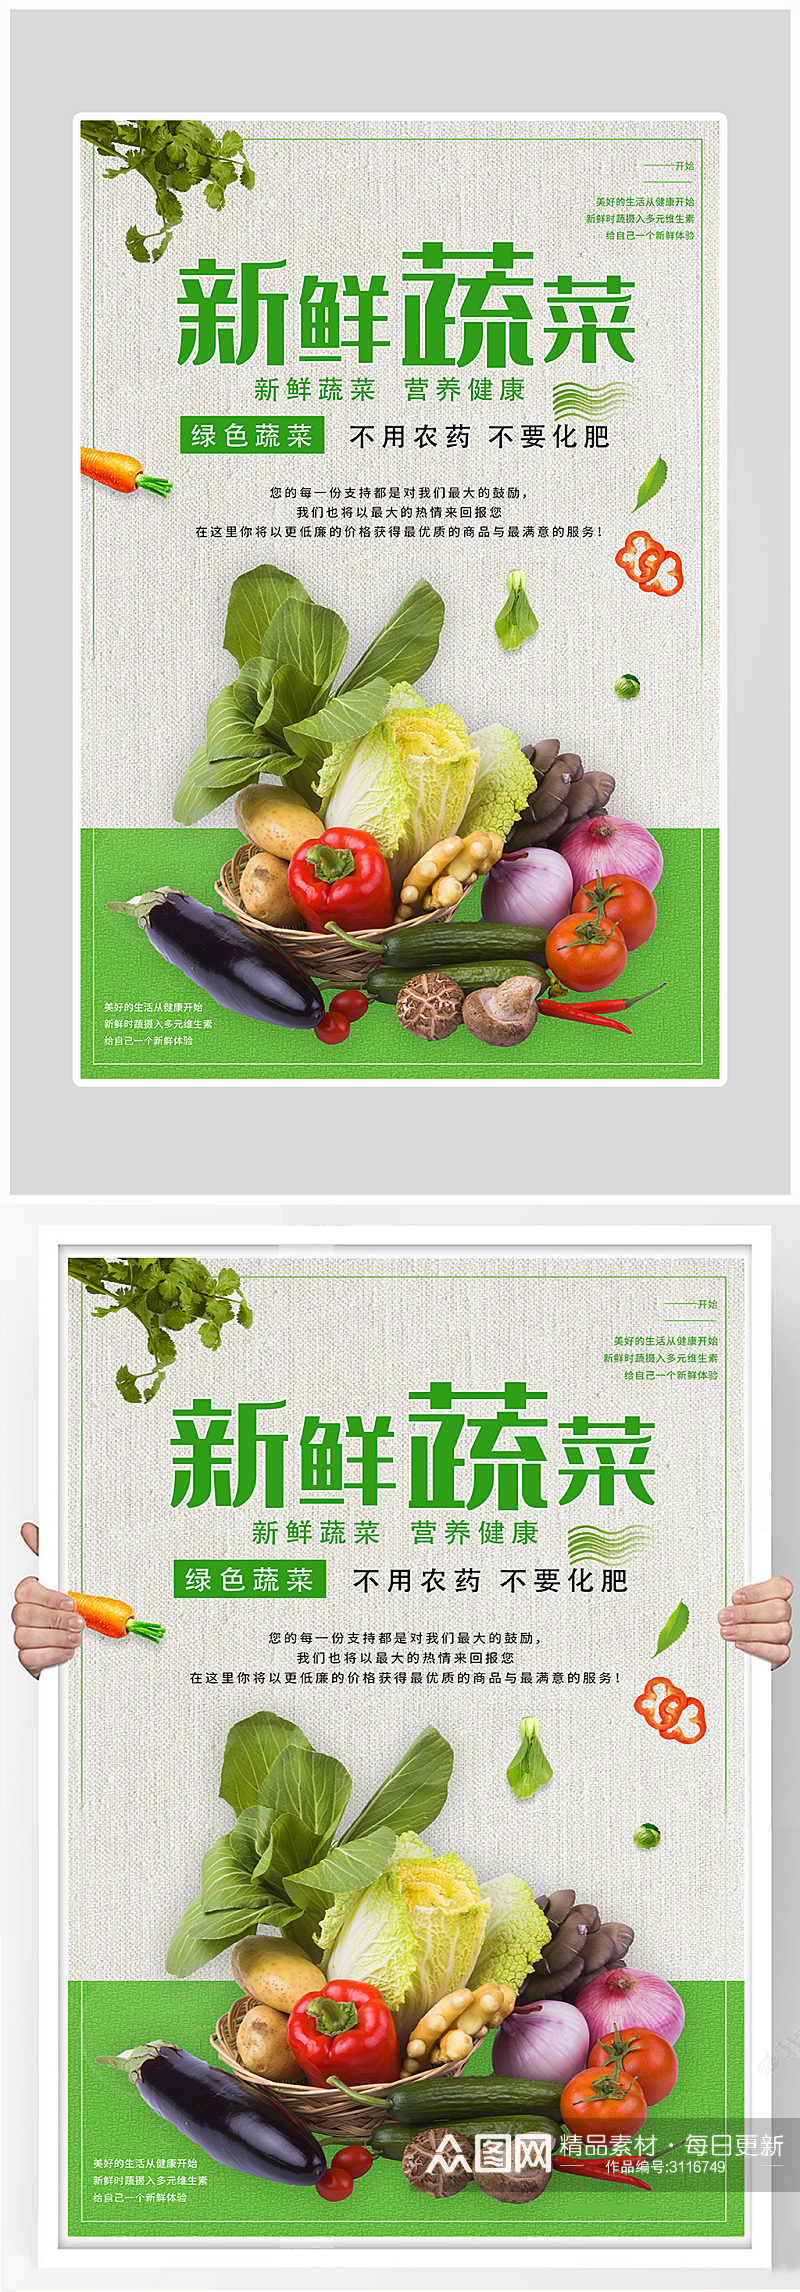 创意健康蔬菜新鲜海报设计素材